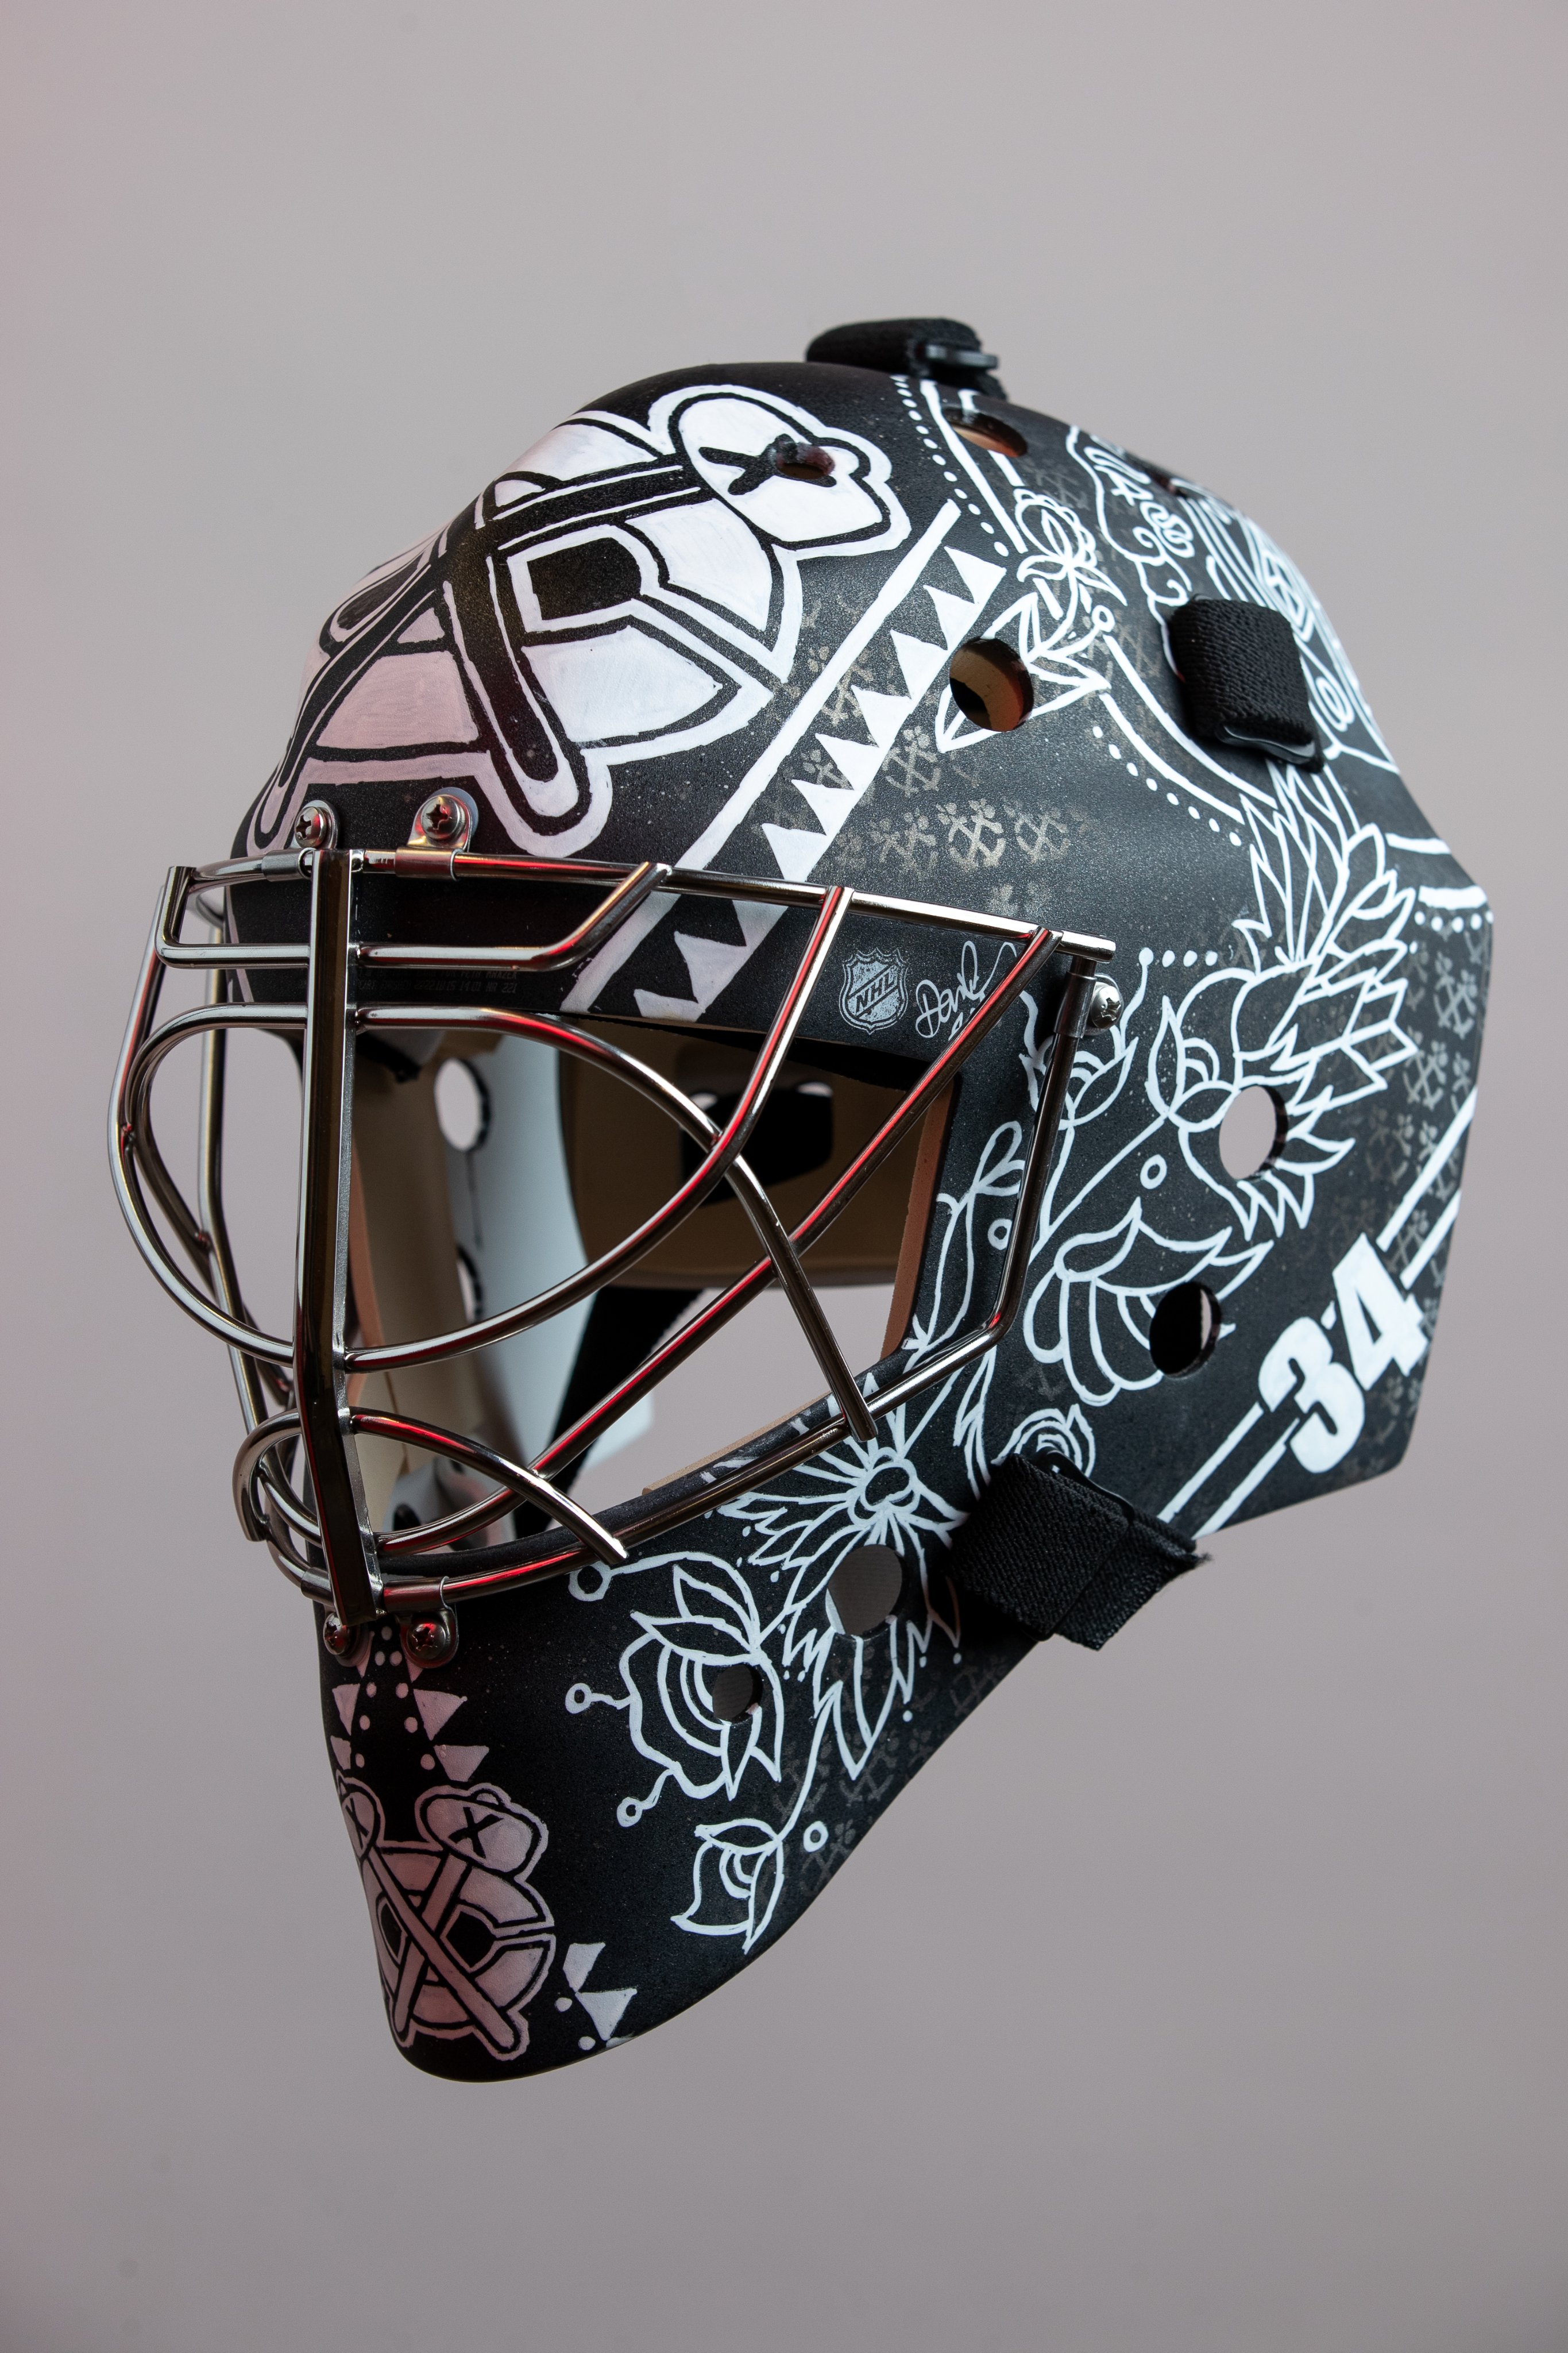 Ojibwe artist designs Chicago Blackhawks helmet for new goalie